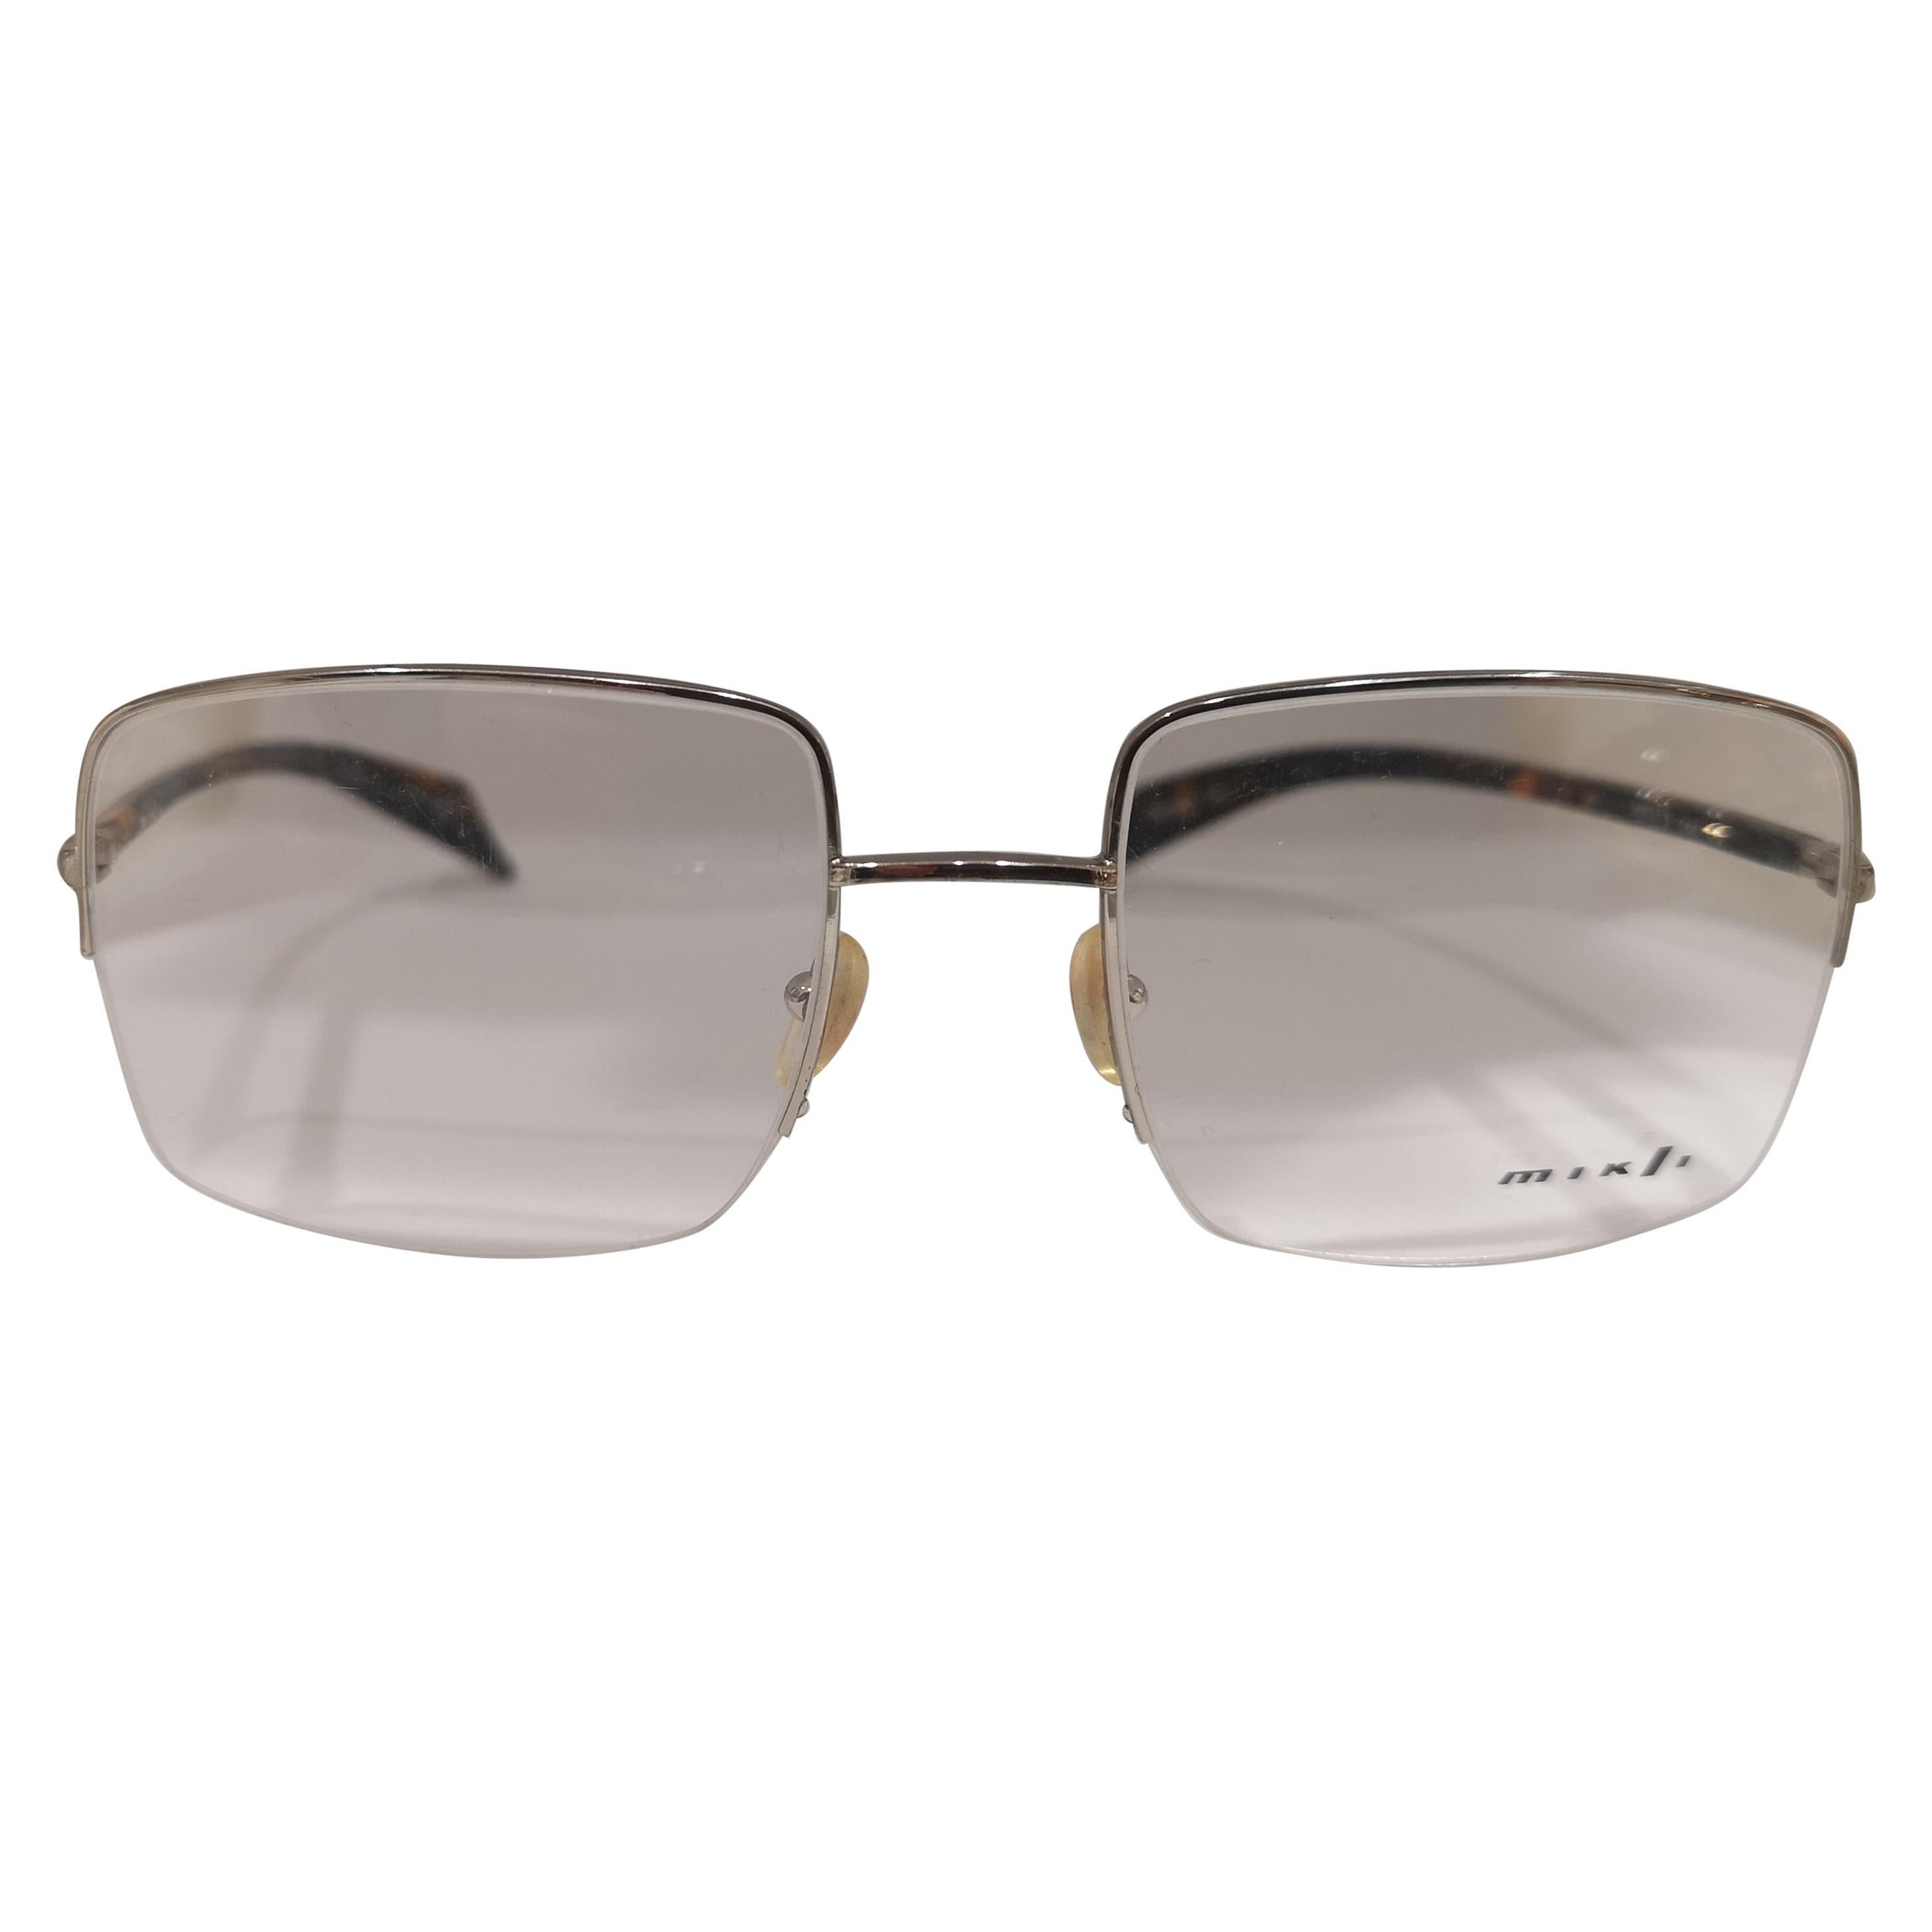 Alain Mikli frames glasses For Sale